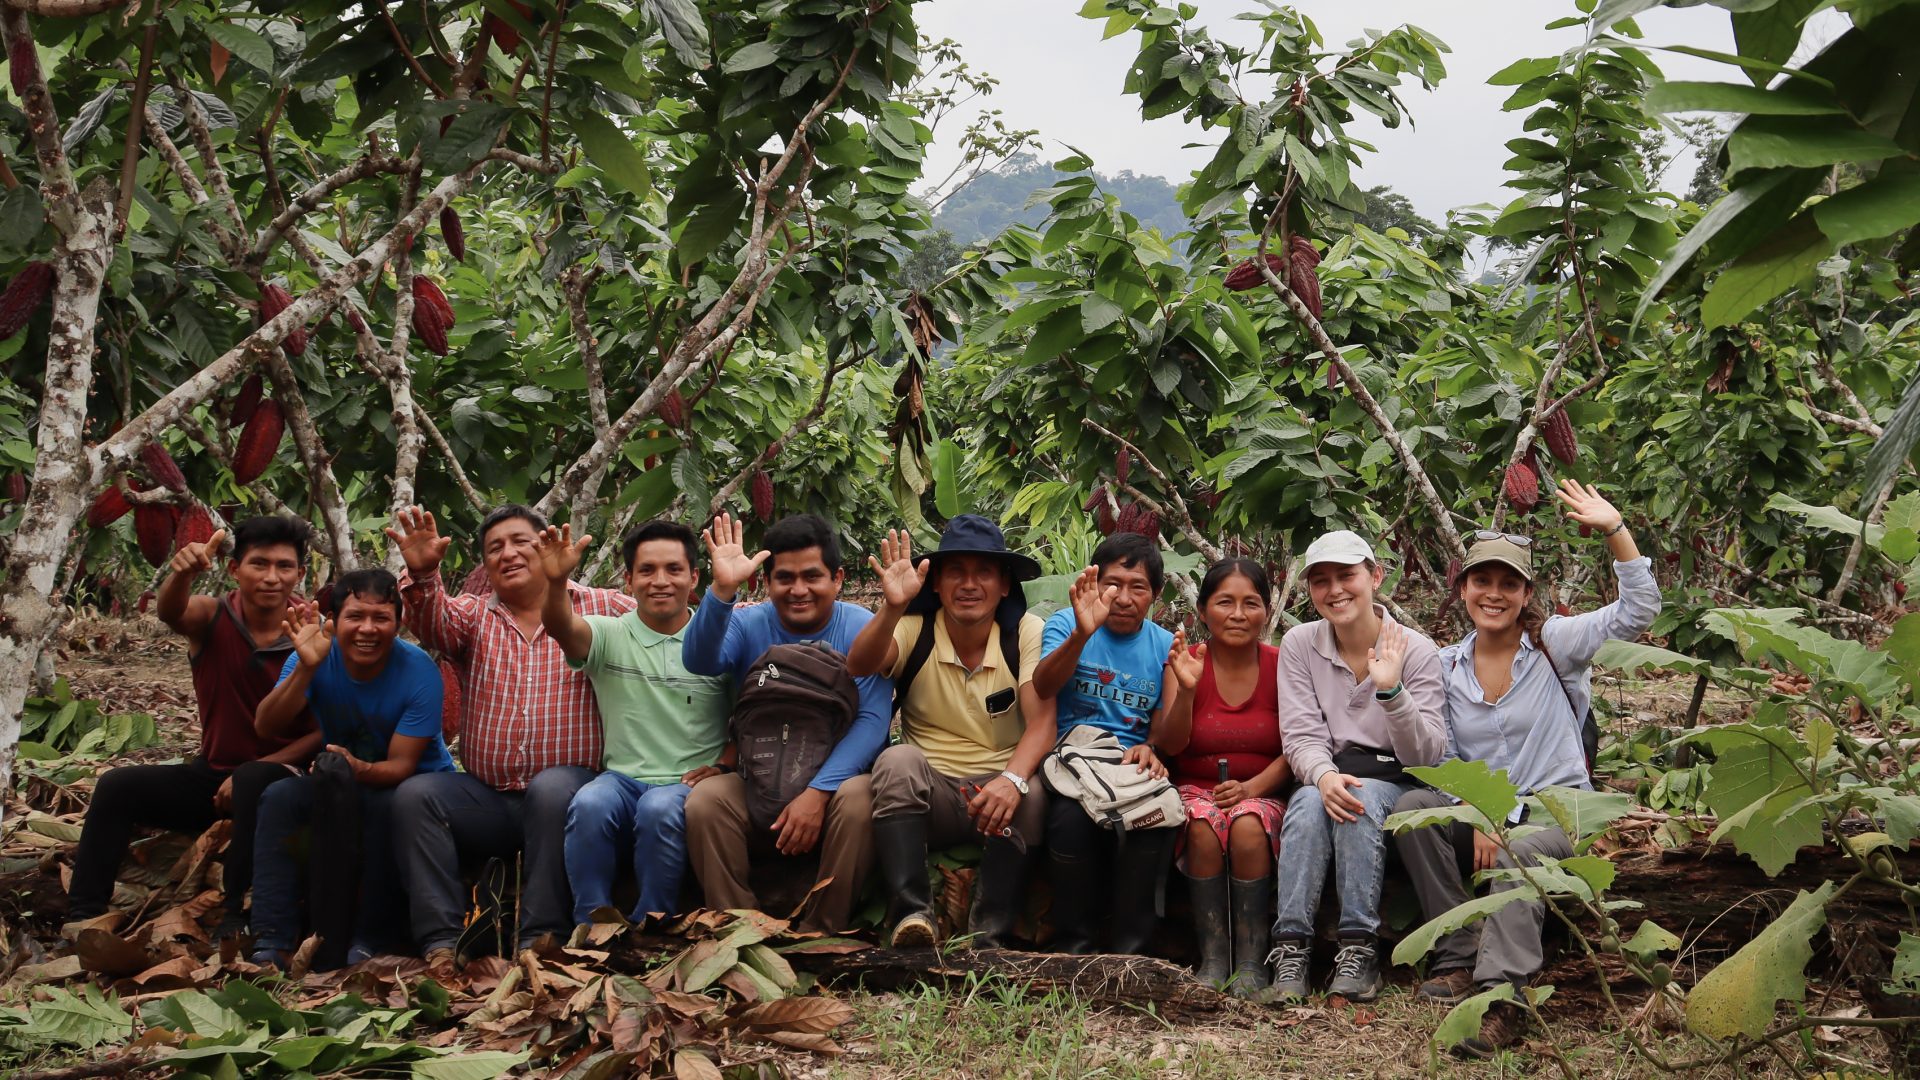 L'équipe cool Earth et les promoteurs de cacao locaux sourient et saluent tout en étant assis sur une bûche entourée de cacaoyers.